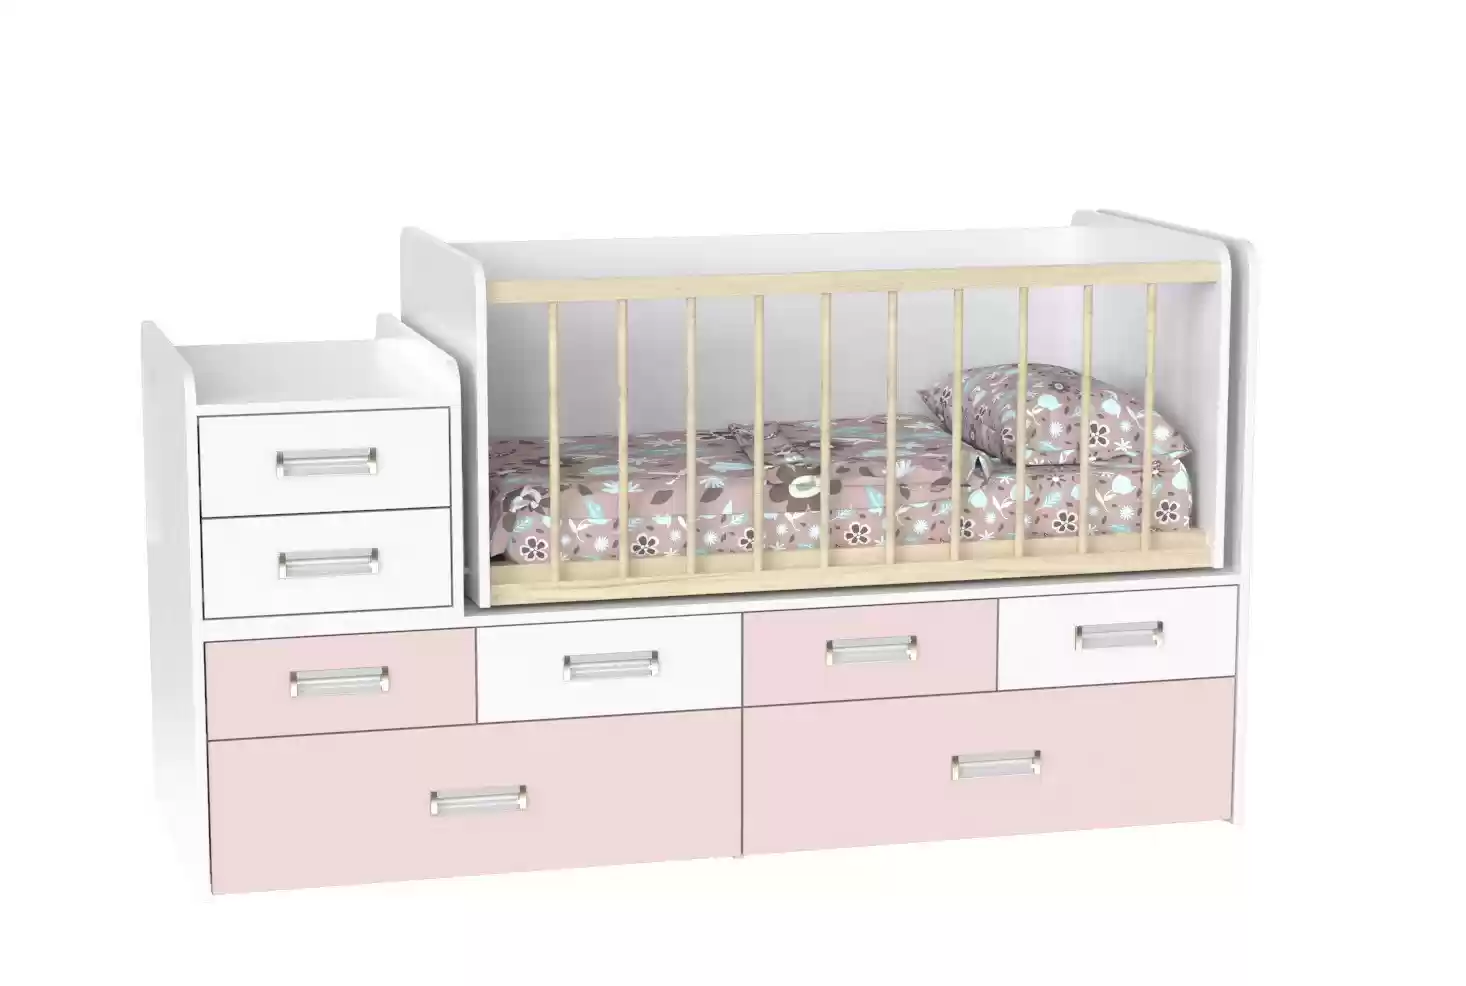 Дитяче ліжко Binky DS4114 (3 в 1) аляска/сакура + аляска (ДСП)